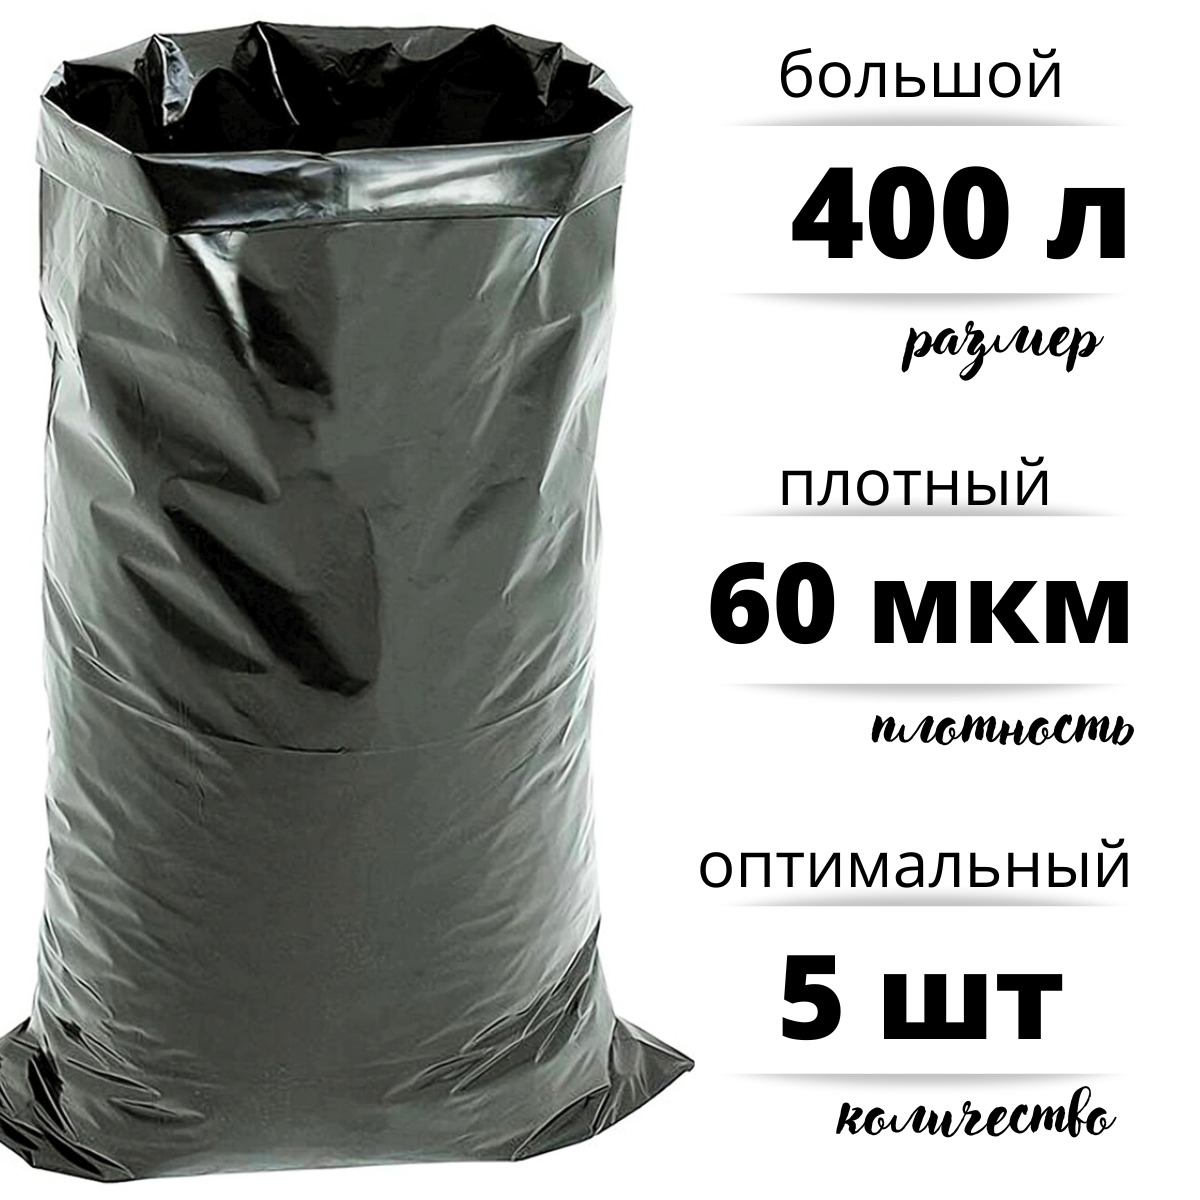 Мешки для мусора БытСервис полиэтиленовые 400 л особо плотные ПВД 60 мкм 5 R545